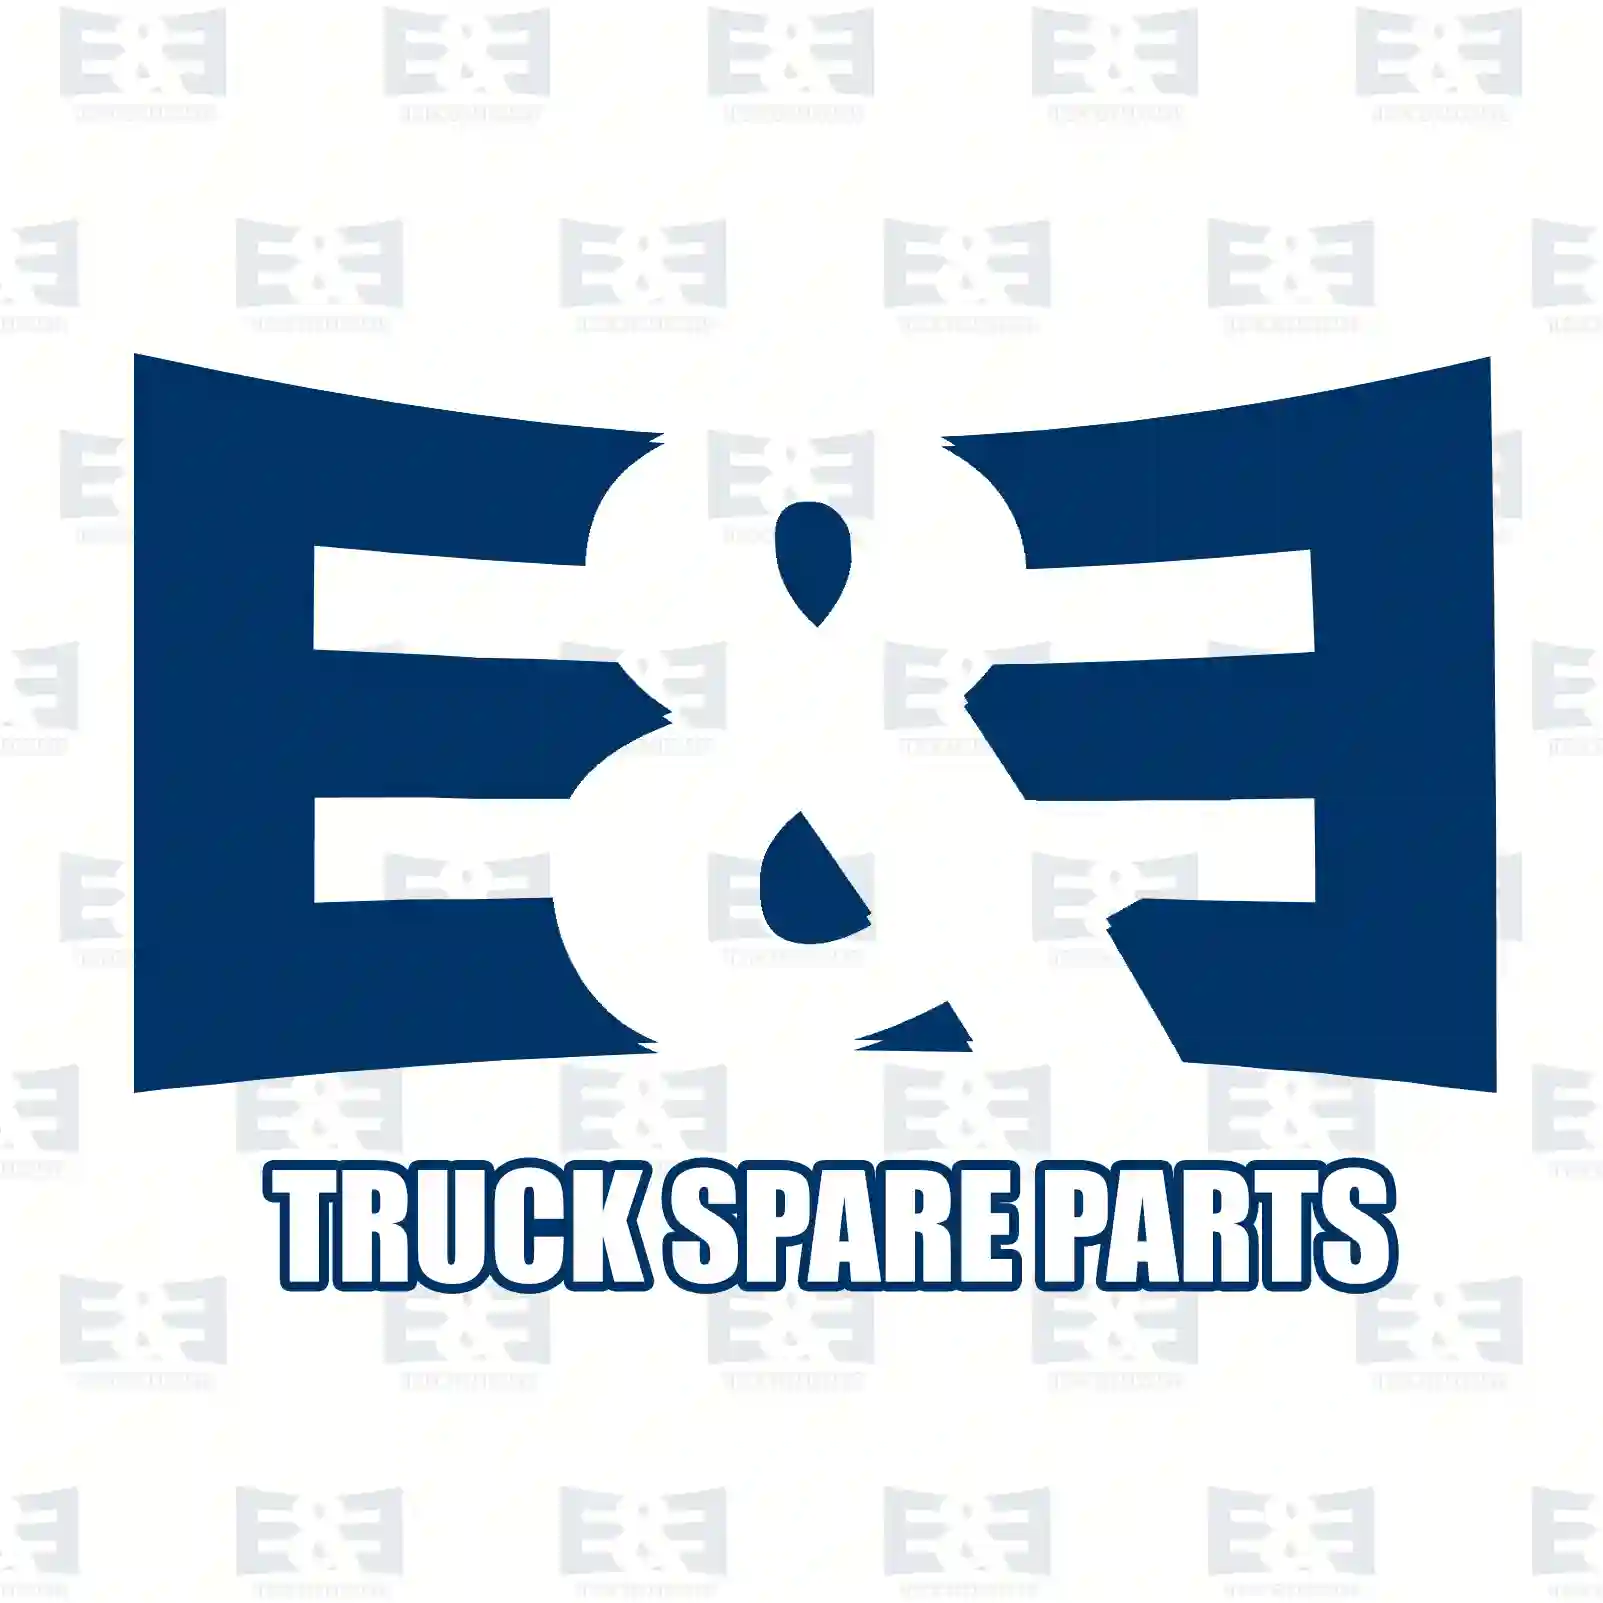 Cabin tilt cylinder, 2E2275676, 5010629093, 5010629108, , , , , , , ||  2E2275676 E&E Truck Spare Parts | Truck Spare Parts, Auotomotive Spare Parts Cabin tilt cylinder, 2E2275676, 5010629093, 5010629108, , , , , , , ||  2E2275676 E&E Truck Spare Parts | Truck Spare Parts, Auotomotive Spare Parts